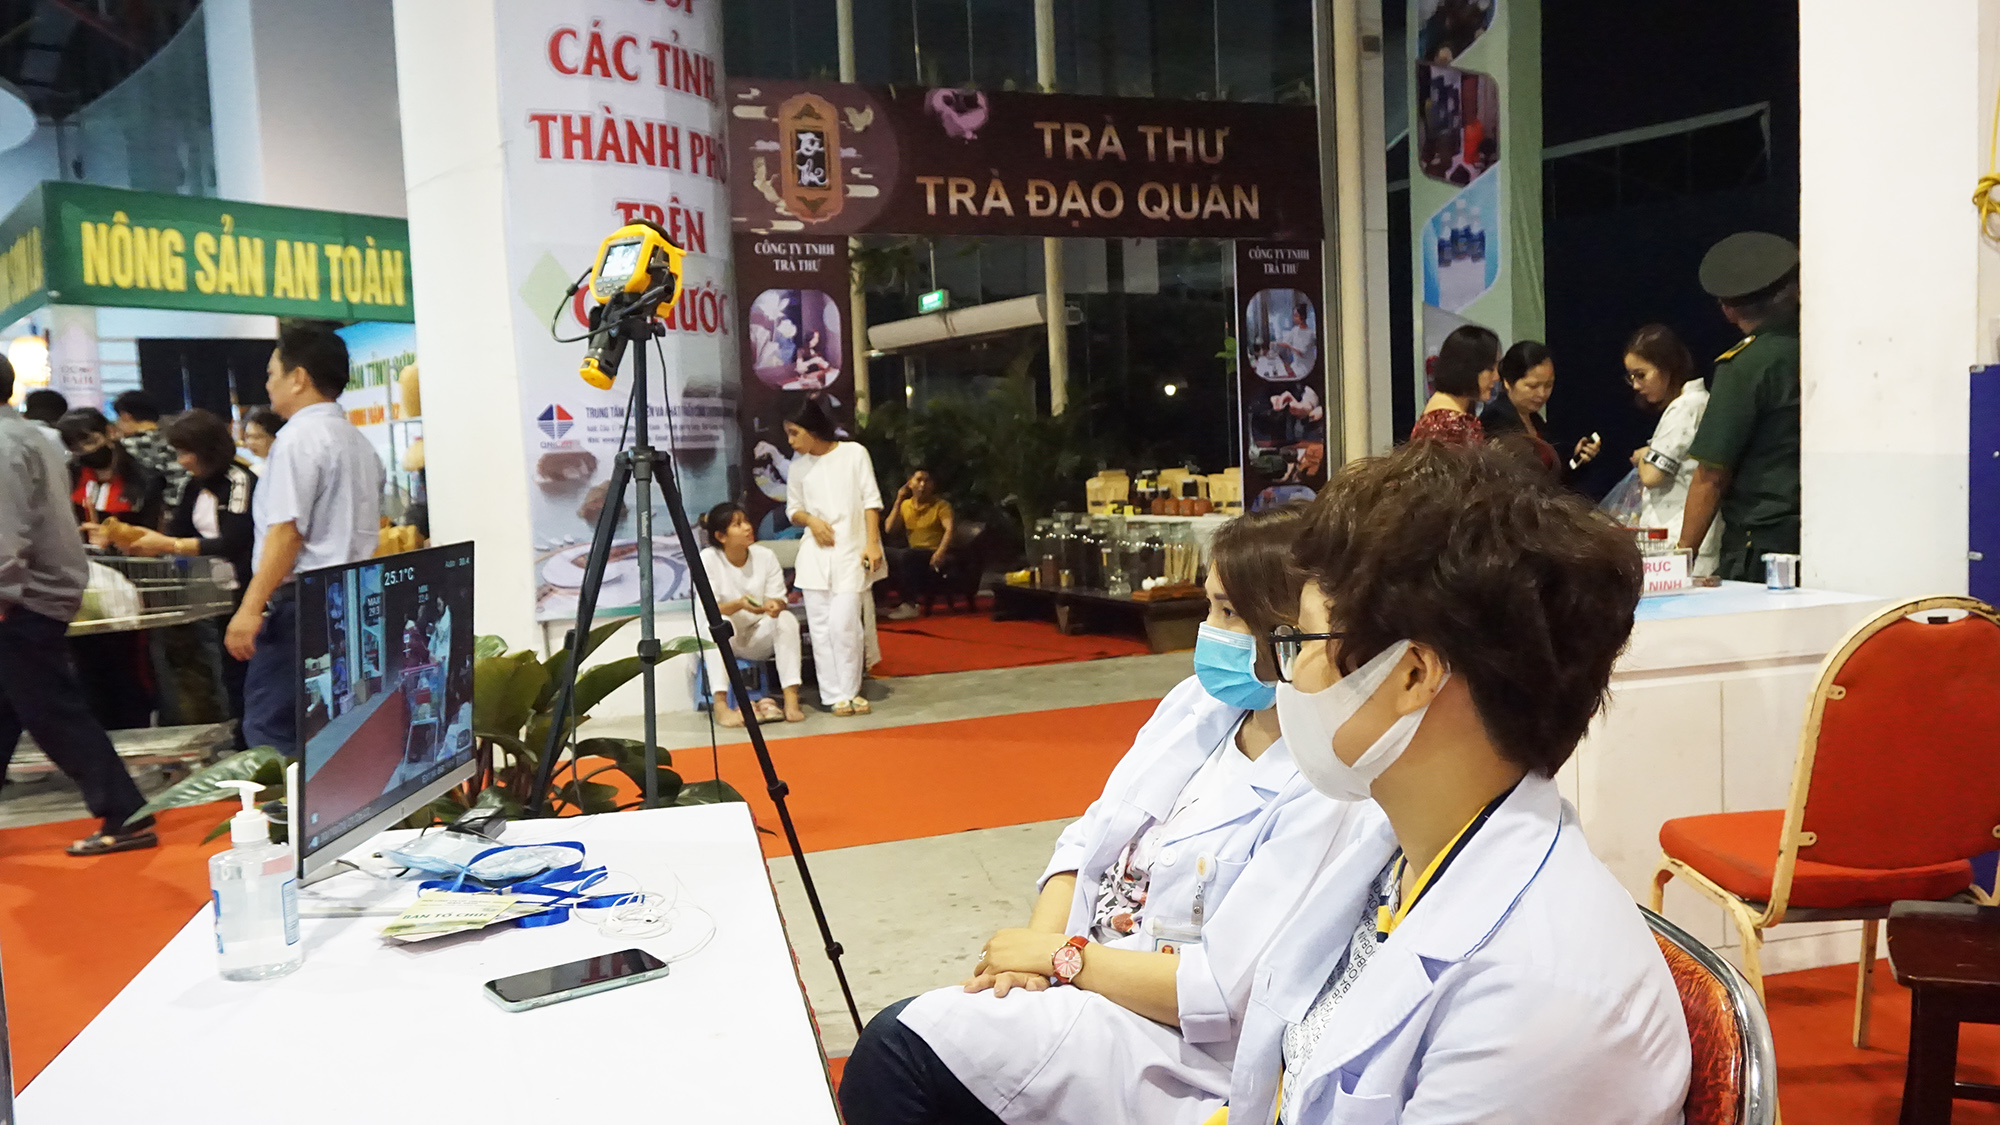 Các yếu tố phòng dịch vẫn được thực hiện nghiêm ngặt tại Hội chợ OCOP Quảng Ninh - 2020 nhằm đảm bảo an toàn cho người dân, du khách.